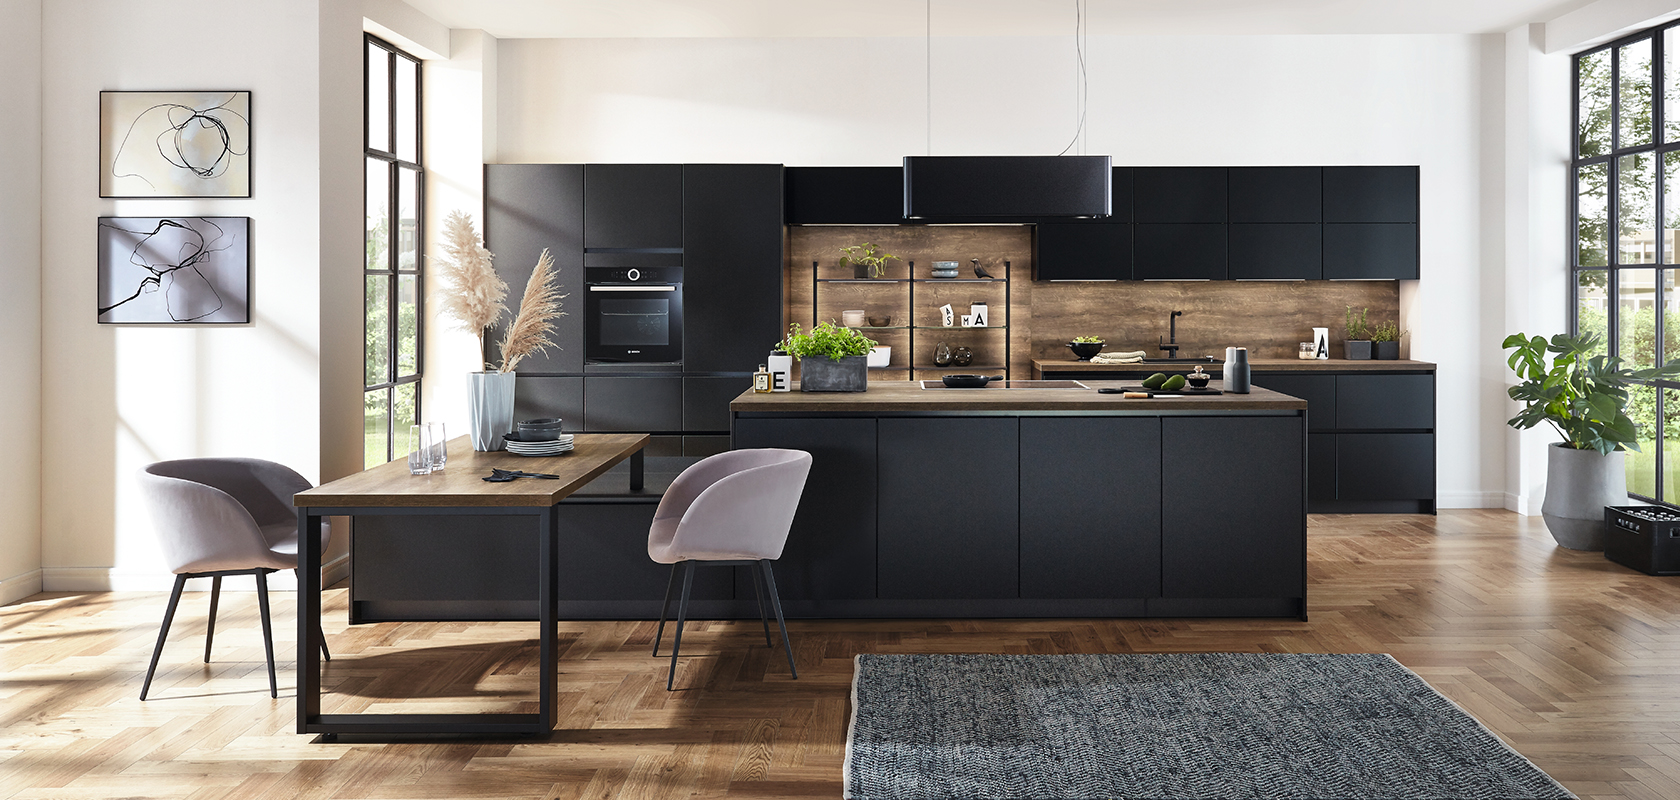 Moderne Kücheninnenräume mit eleganten schwarzen Schränken, Holzakzenten und einer geräumigen Insel, die durch natürliches Licht von großen Fenstern ergänzt wird.